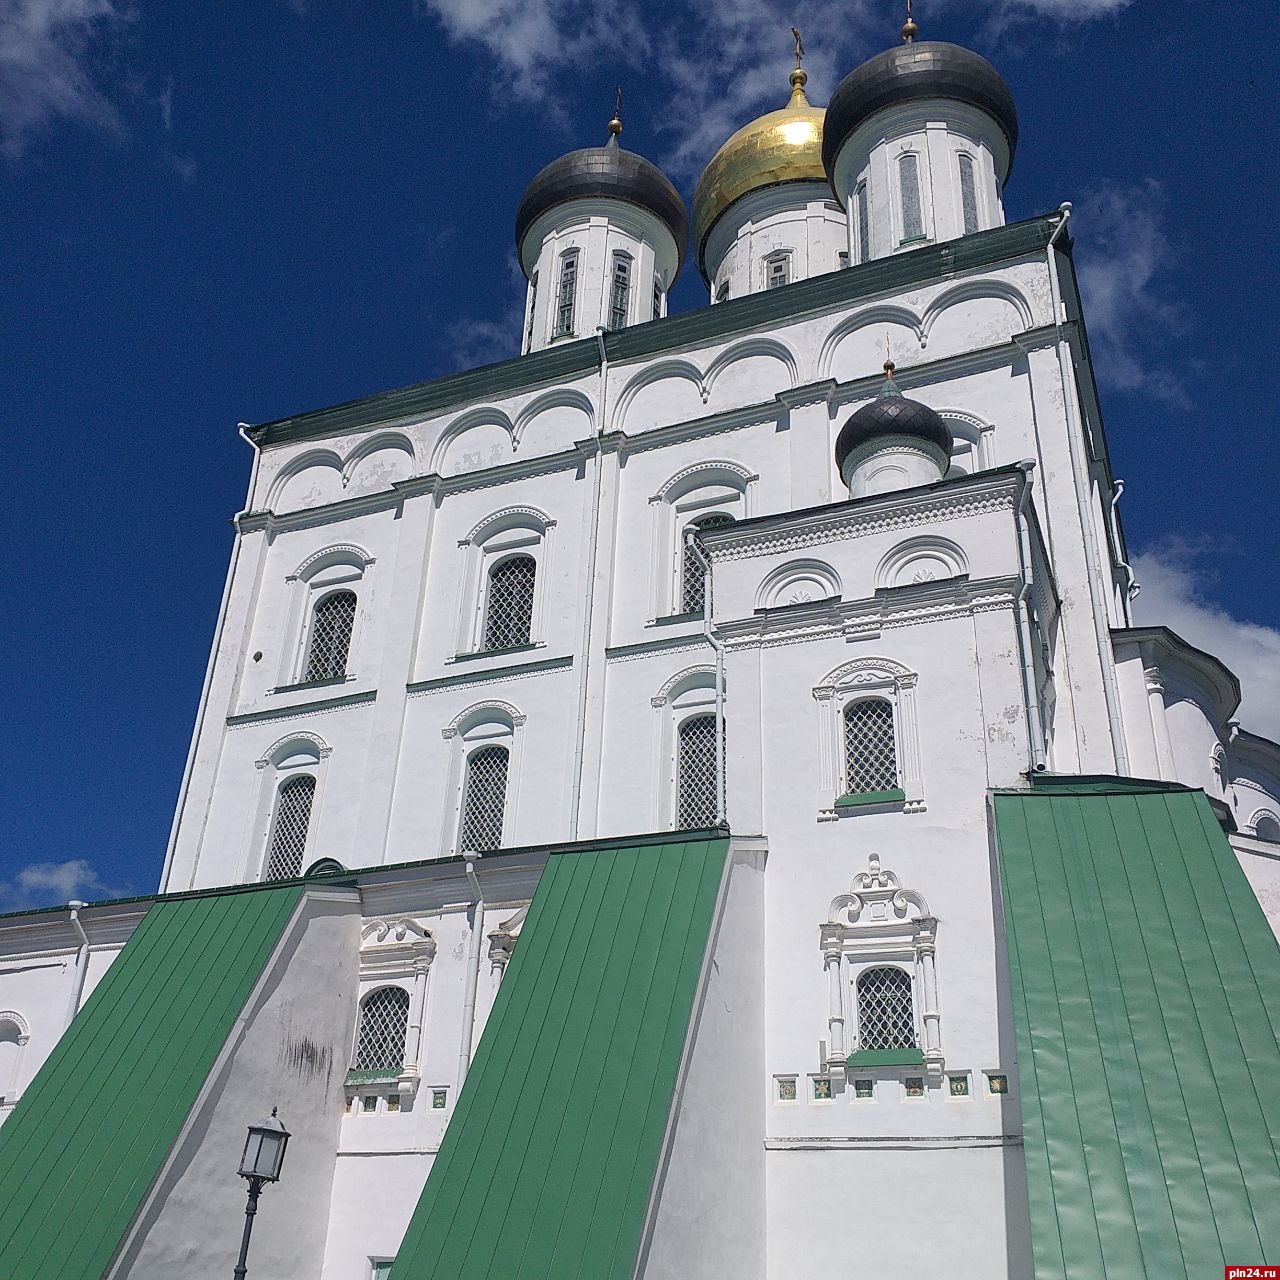 Специалисты продолжают разработку проекта реставрации Троицкого собора в Пскове